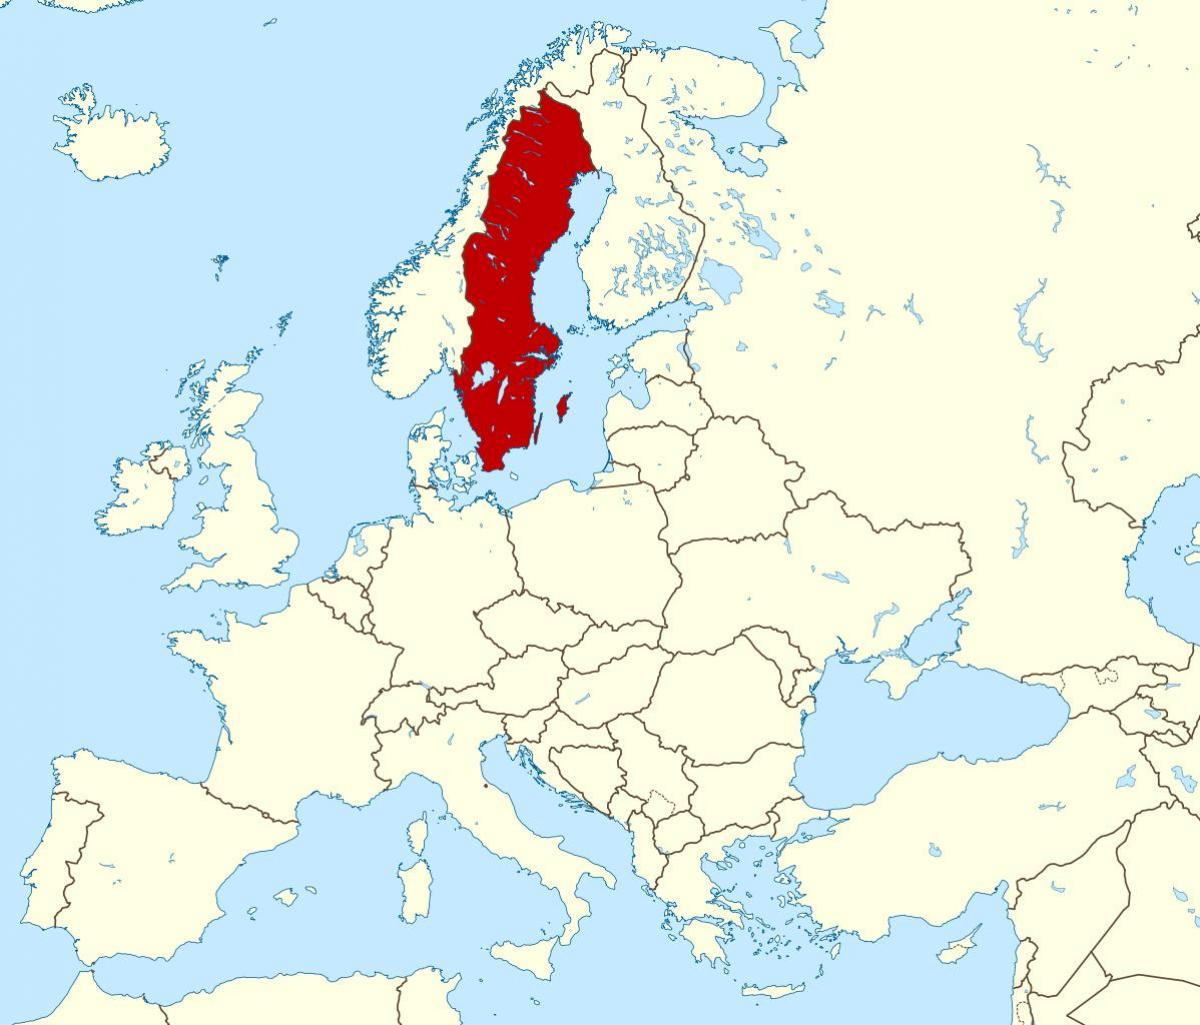 خريطة أوروبا السويد